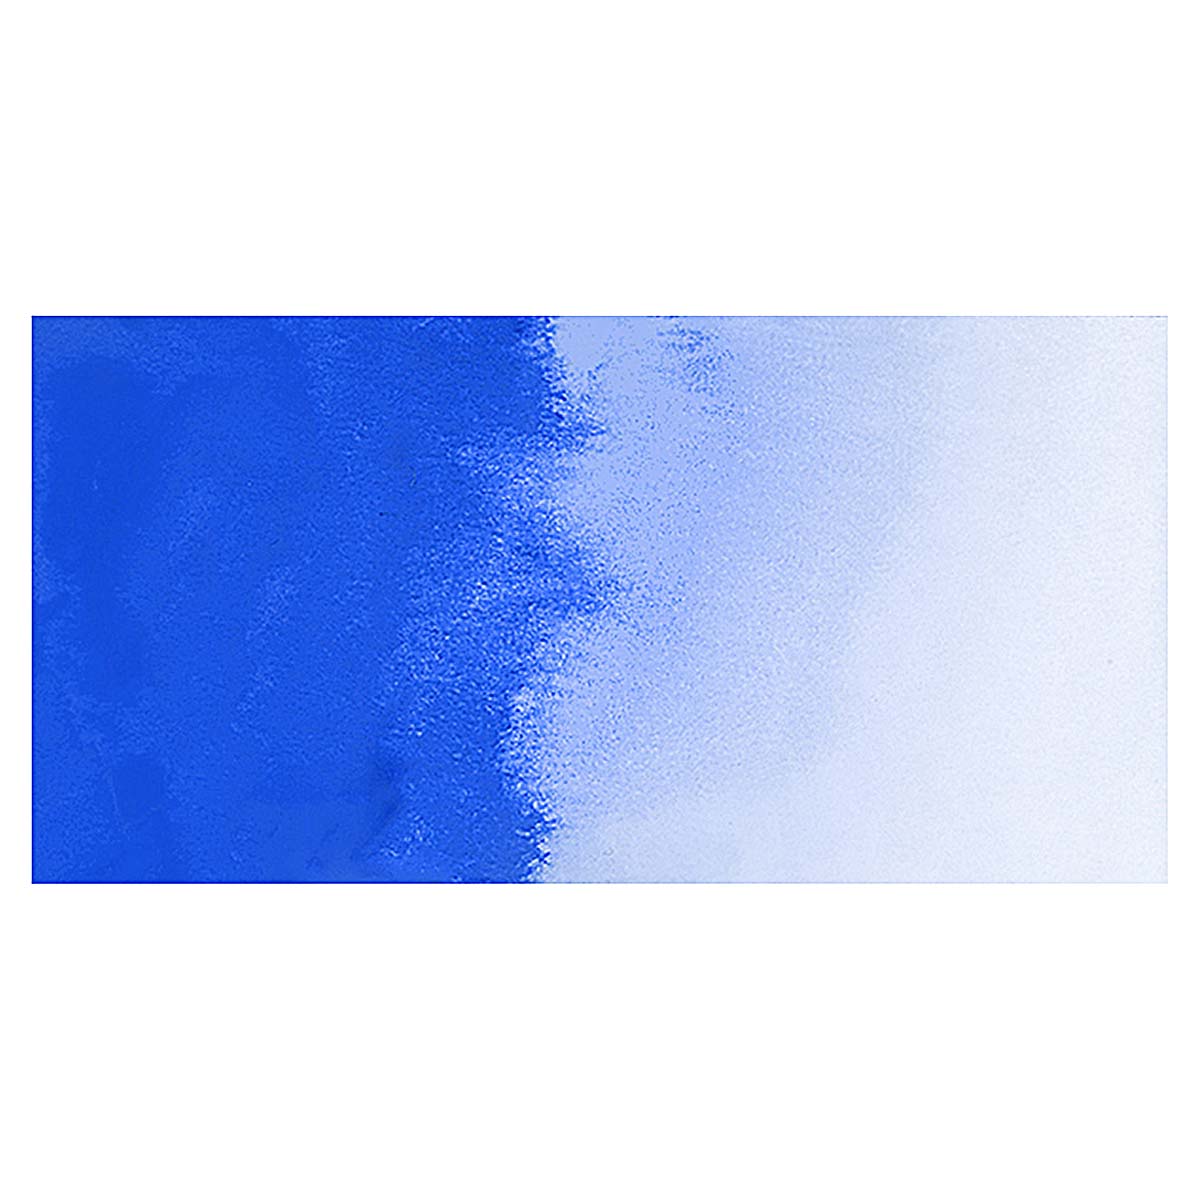 QoR Watercolor Paint - Cobalt Blue, 11ml Tube